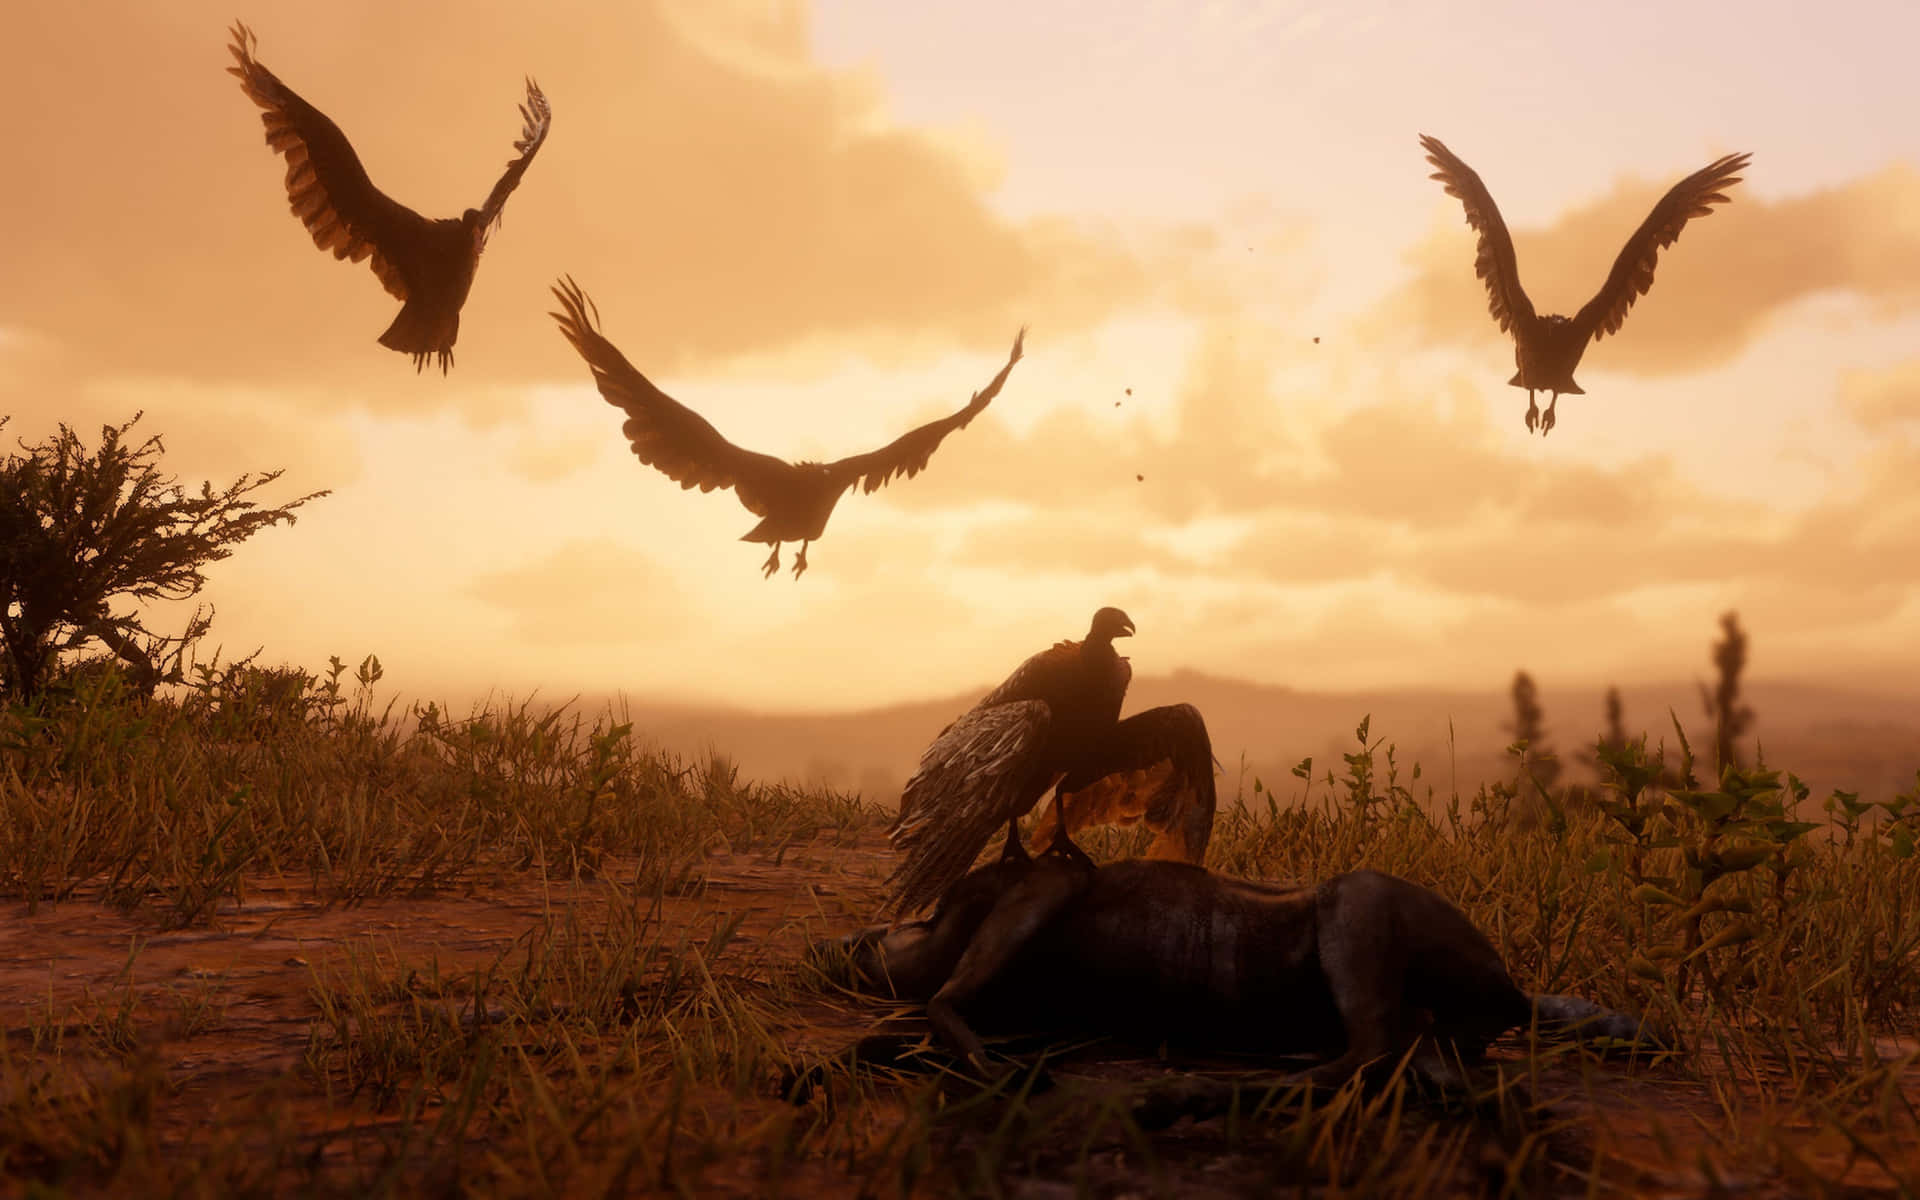 Migliorsfondo Di Red Dead Redemption 2 Con Avvoltoi Che Si Nutrono Di Un Cane Morto